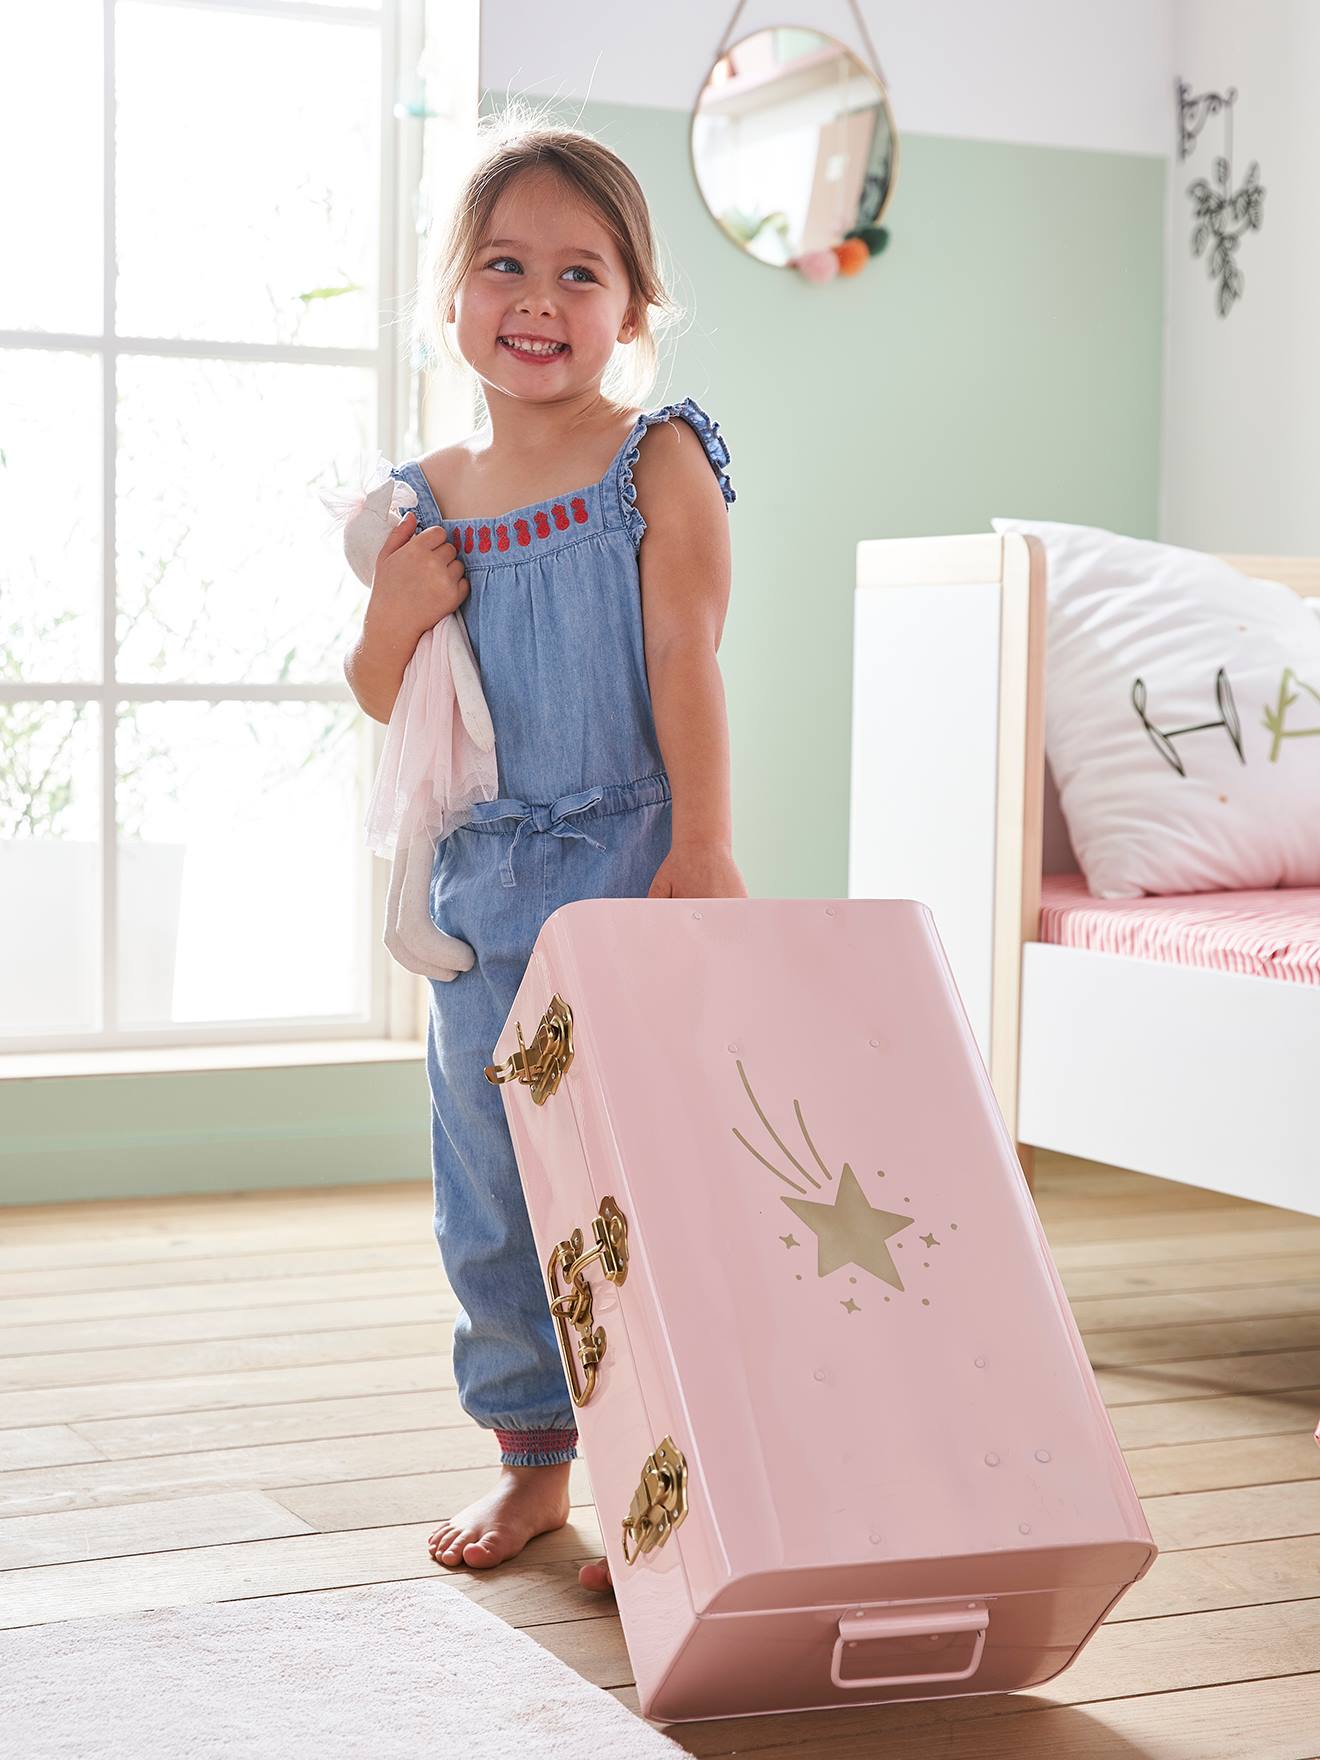 & Kindermöbel Kinderzimmeraccessoires Kinderzimmer-Aufbewahrung Baby & Kind Babyartikel Baby Textilfarbe Starterkit 5 Farben Metallic 